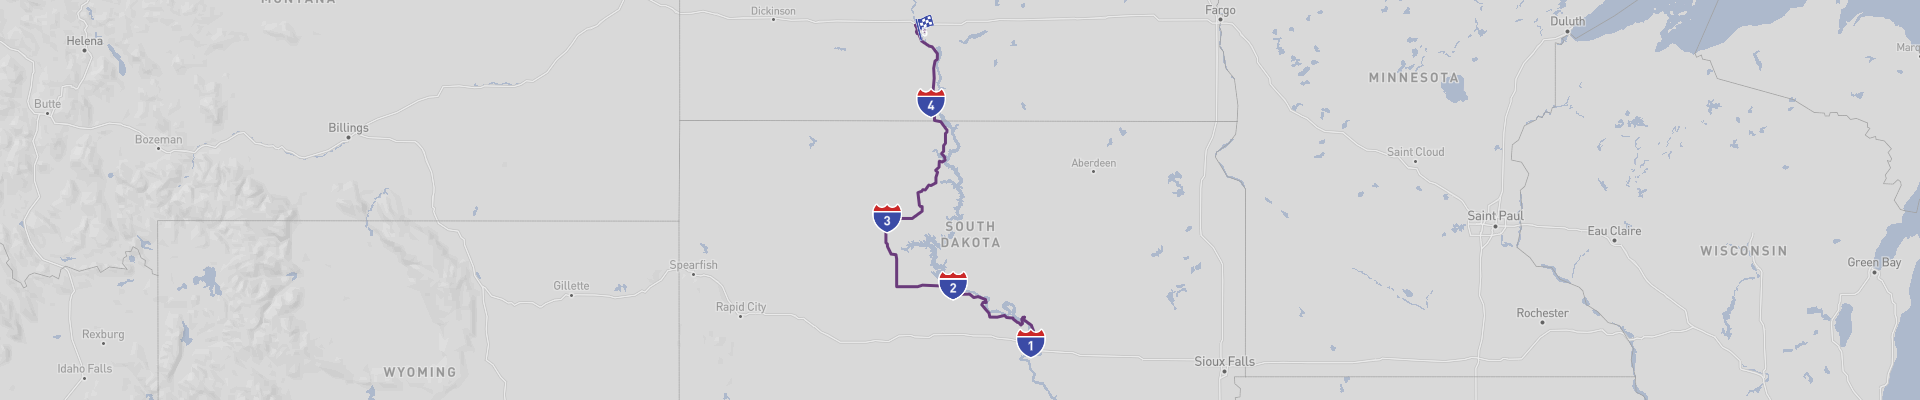 Dakotas Classic Road Trip